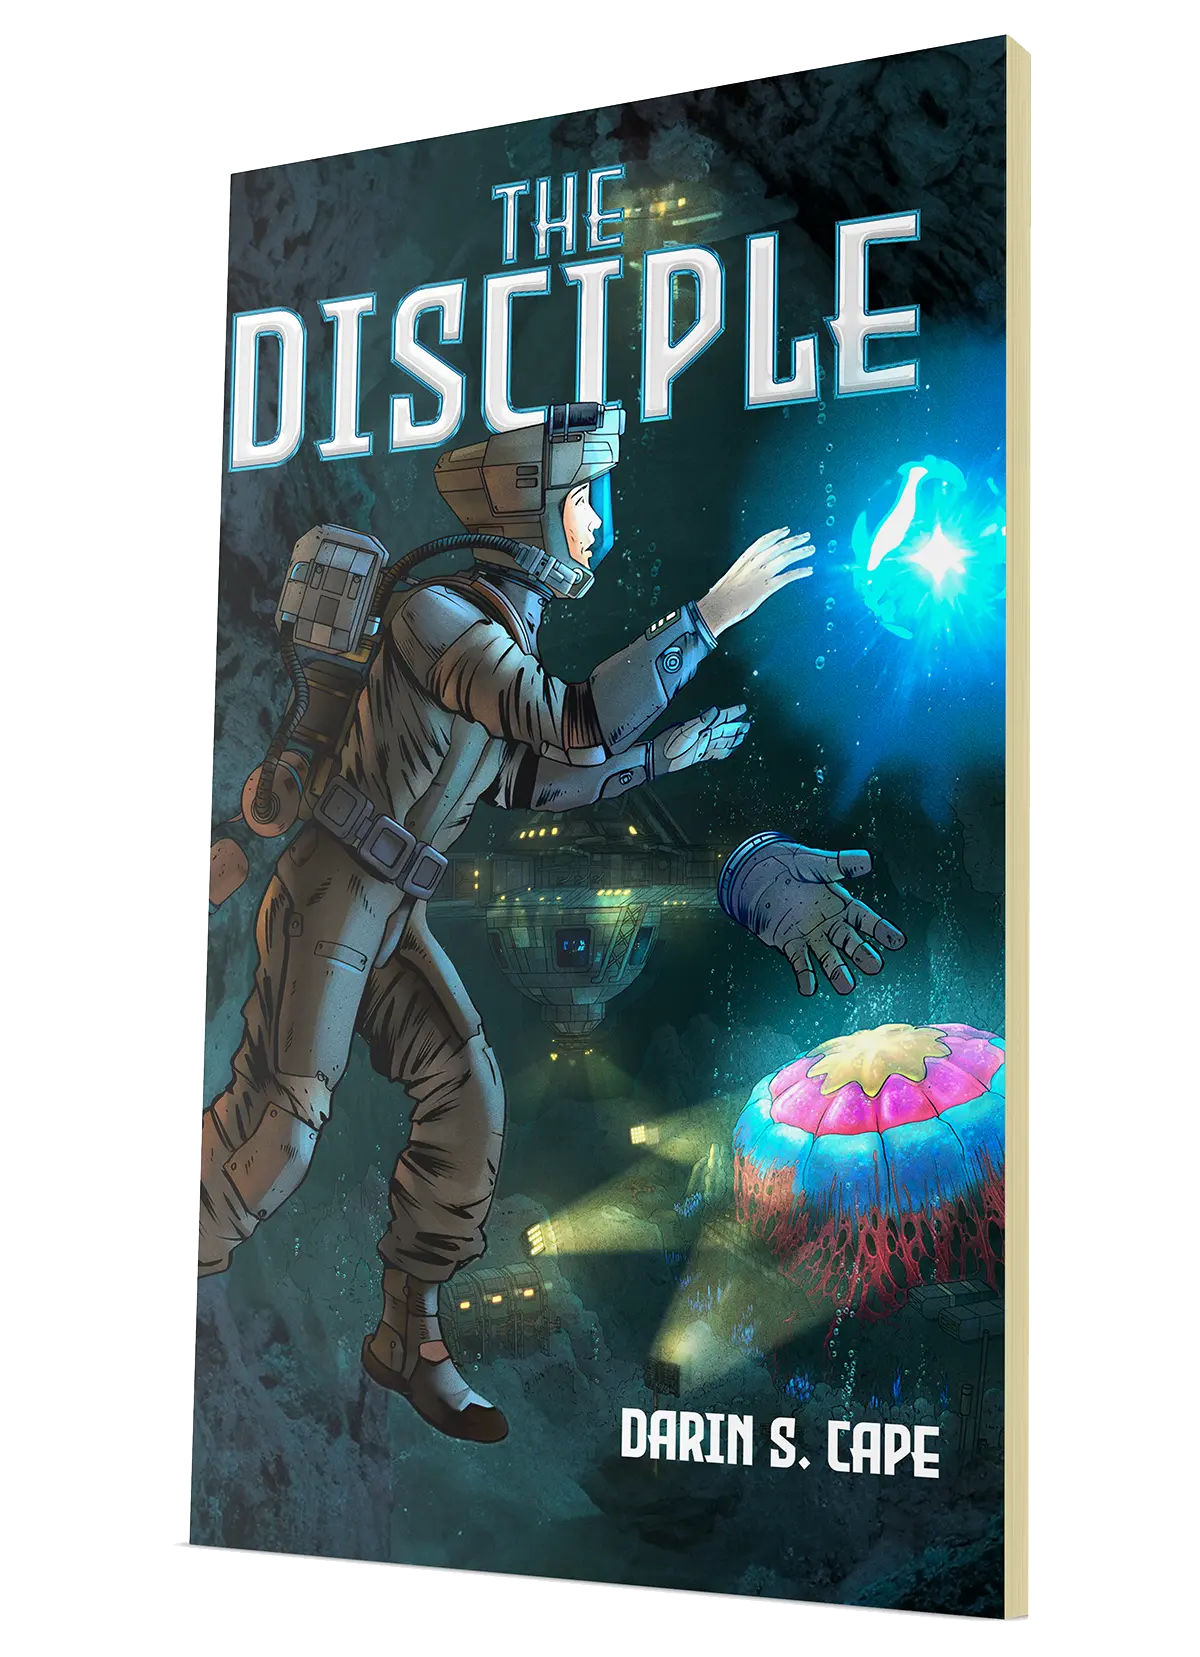 The Disciple Paperback - SHP Comics